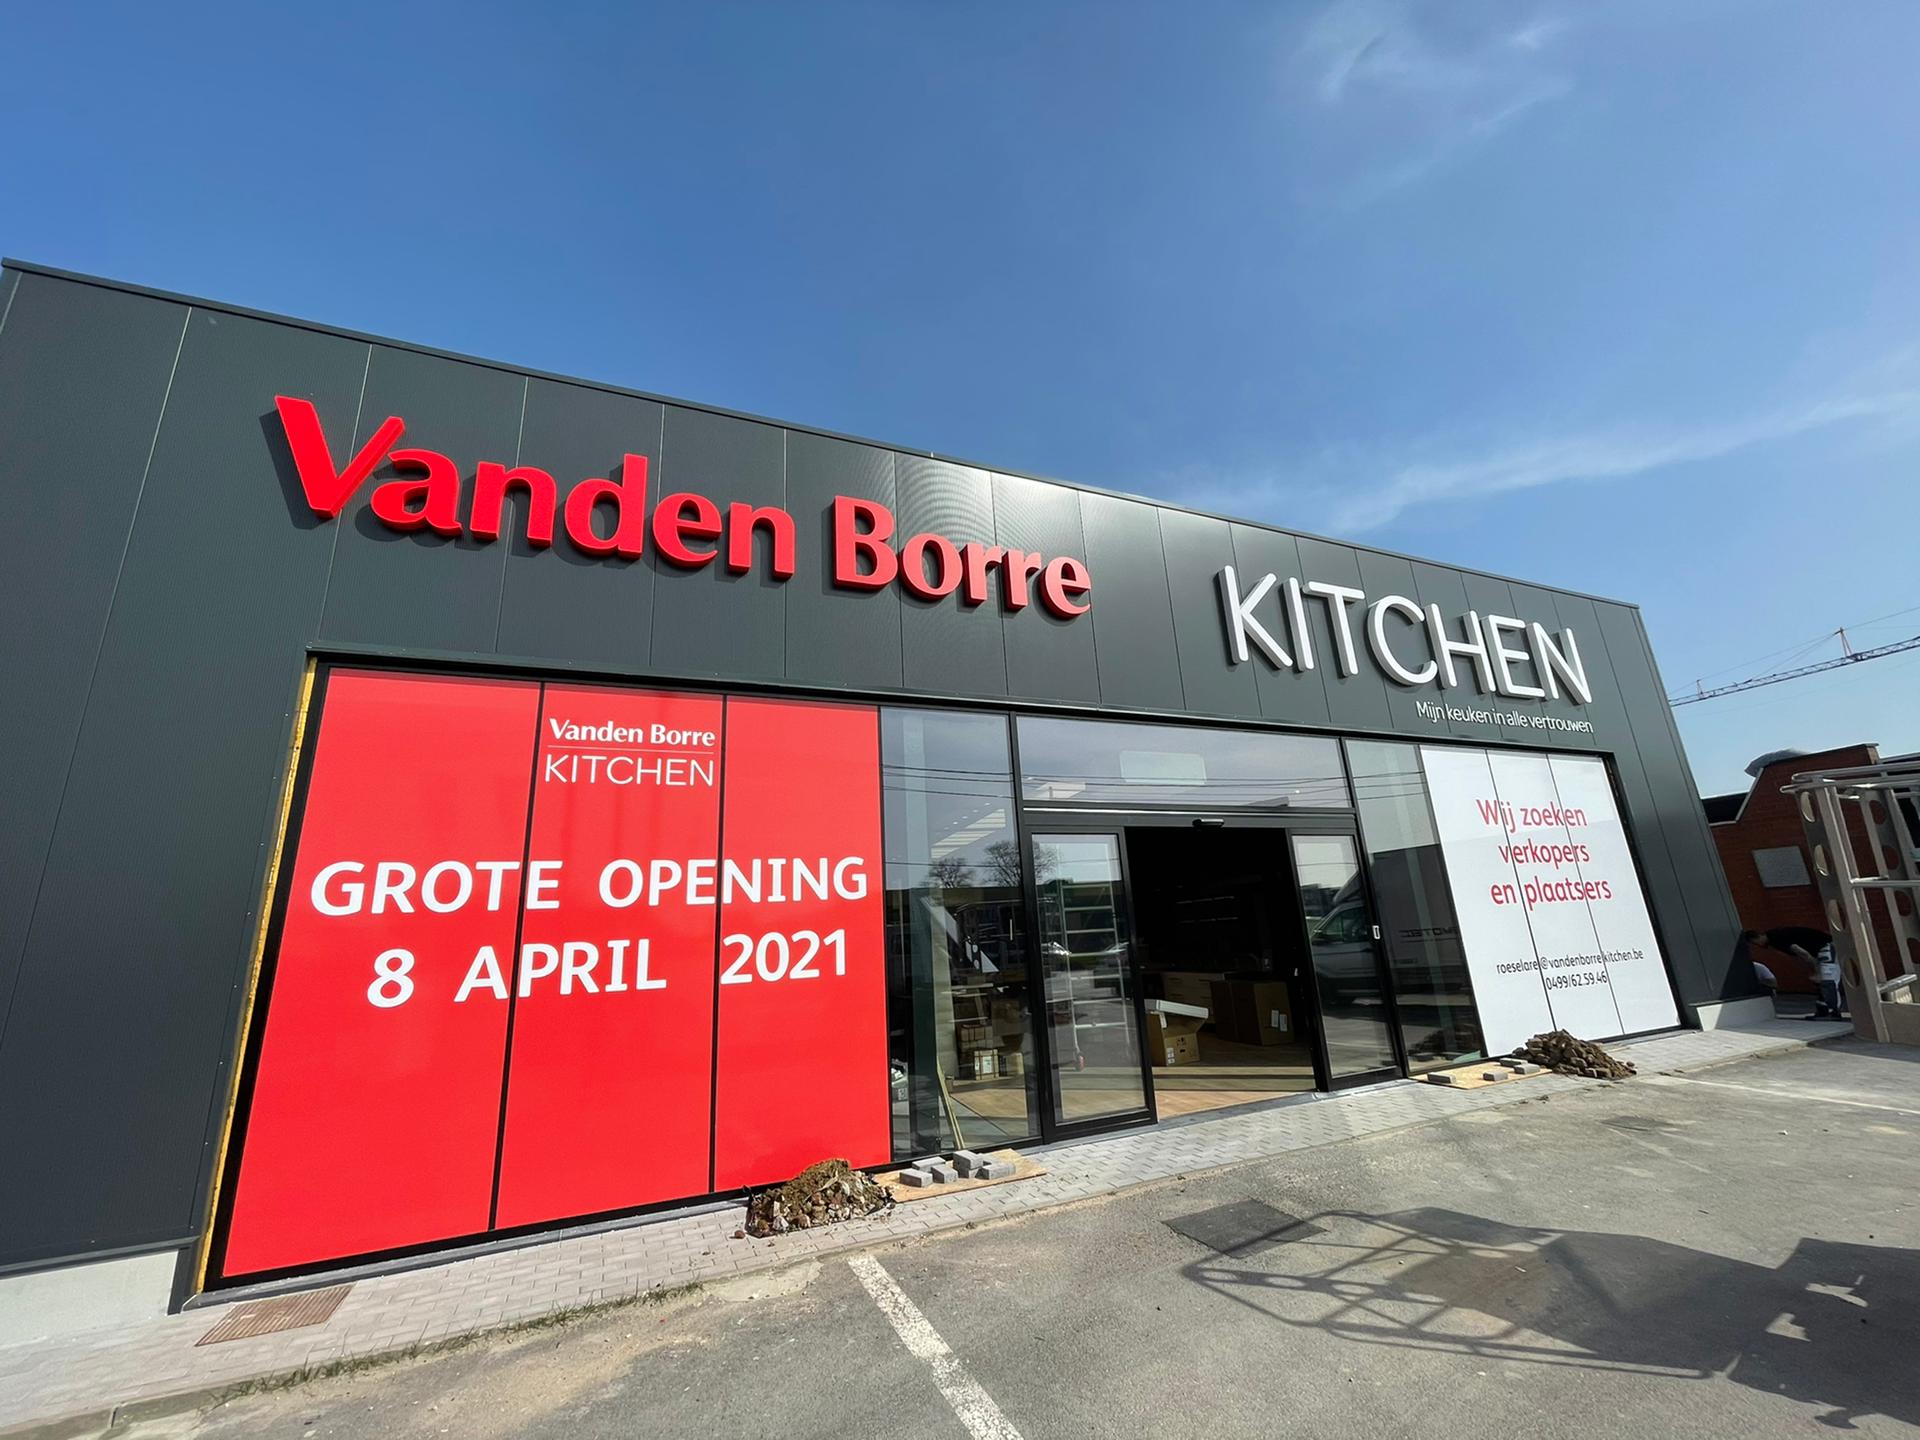 Vanden Borre kitchen